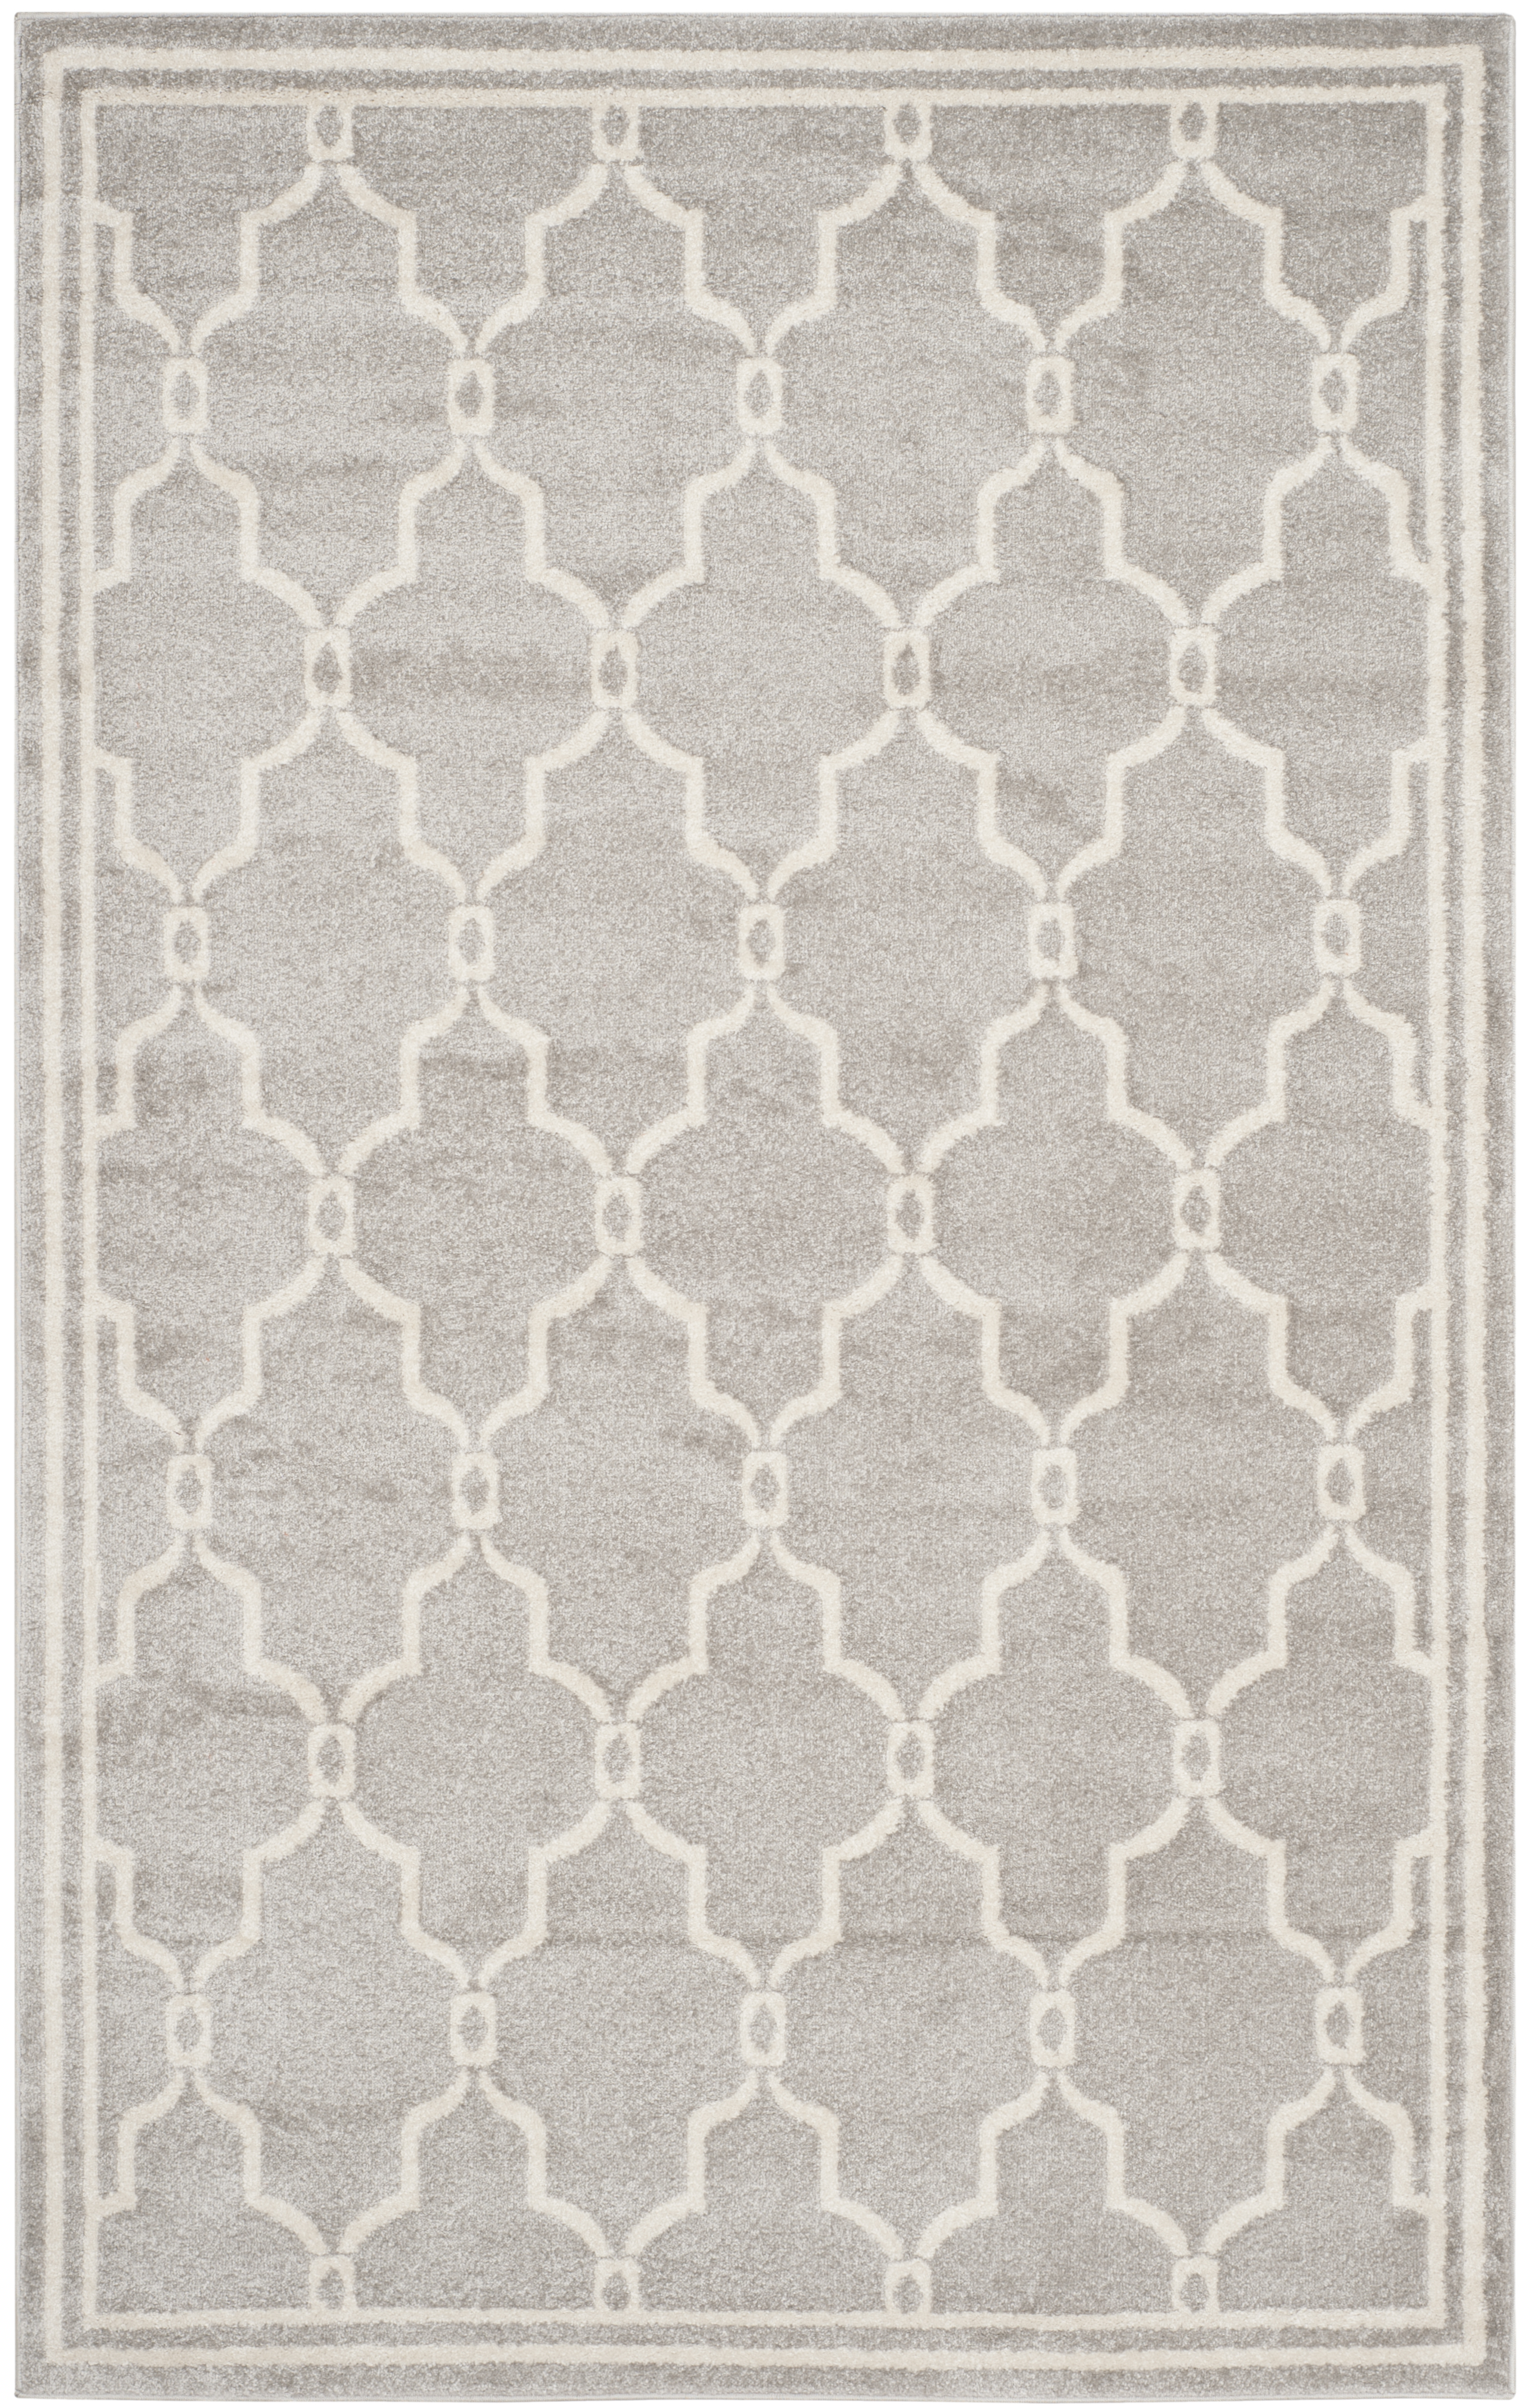 Tapis interieur / exterieur en gris clair & ivoire, 122 x 183 cm